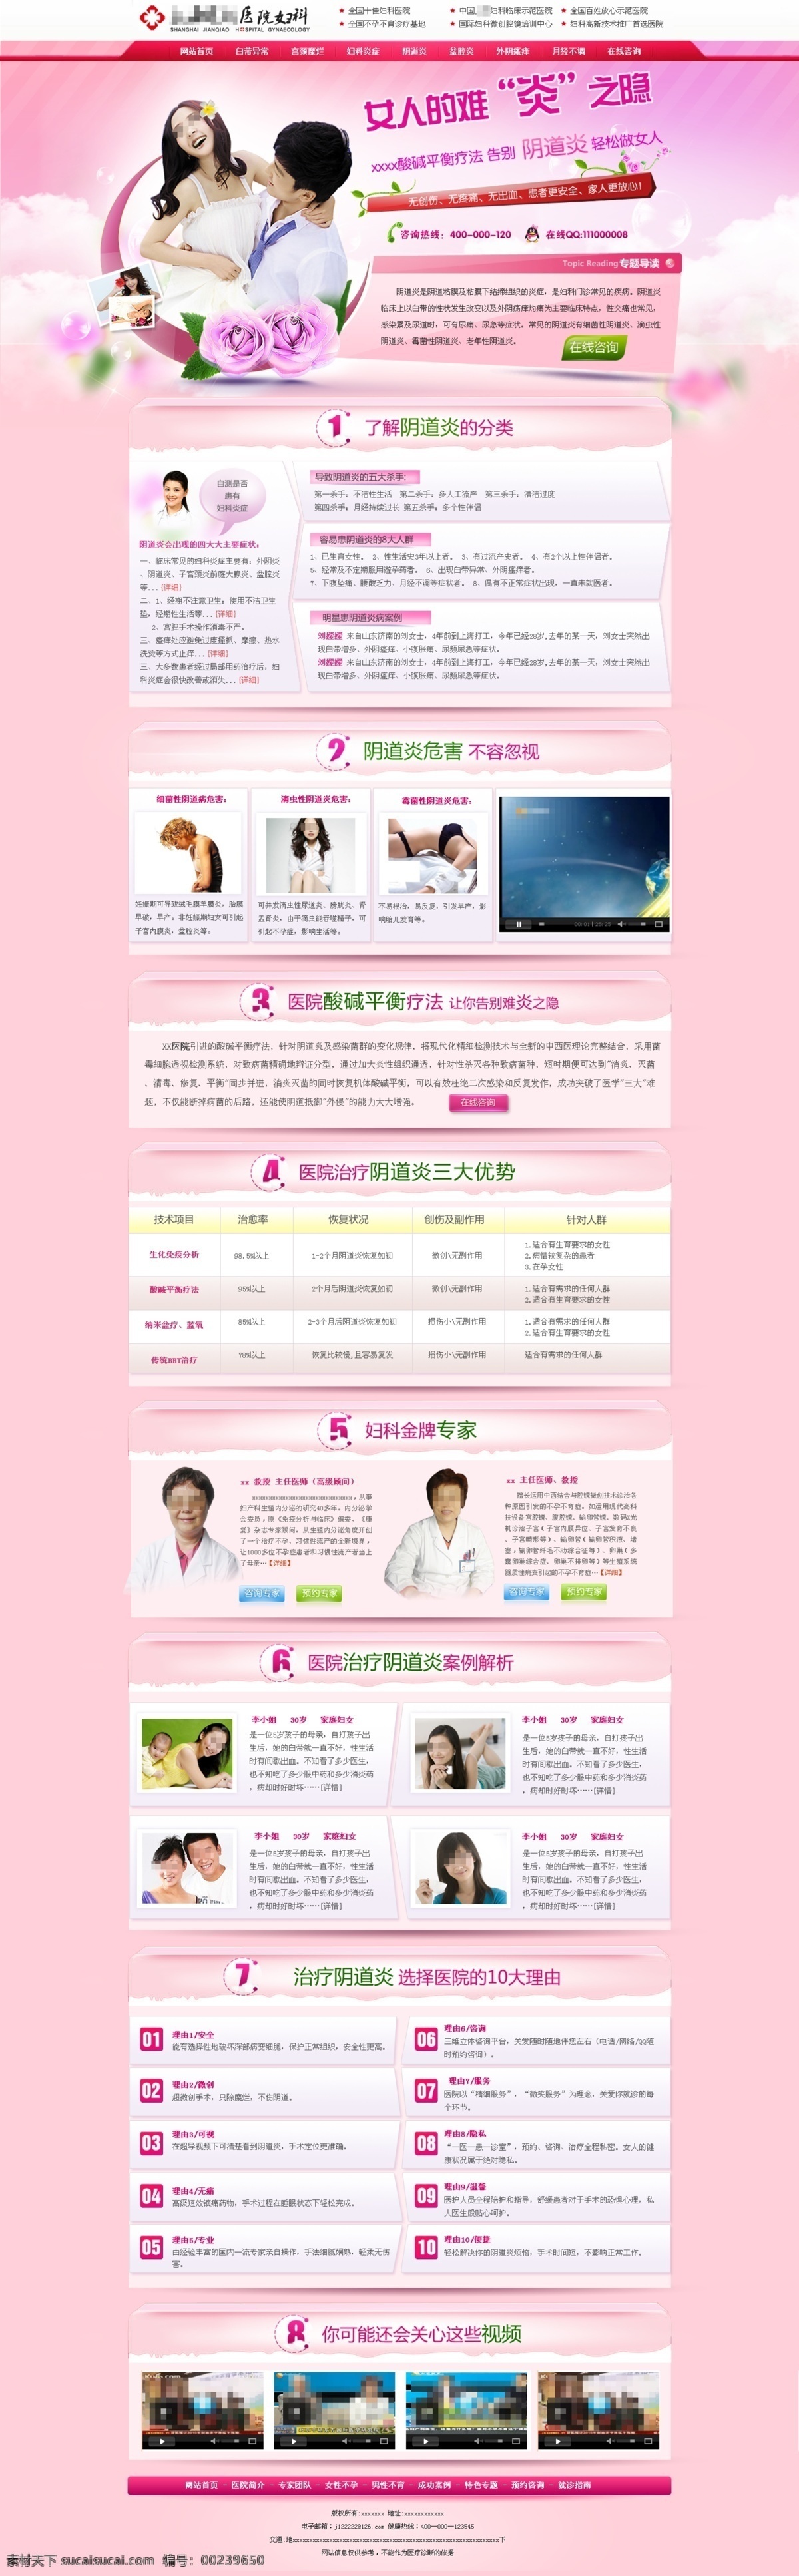 妇科 女性 阴道炎 专题 病种专题 妇科女性专题 阴道炎专题 中文模板 网页模板 源文件